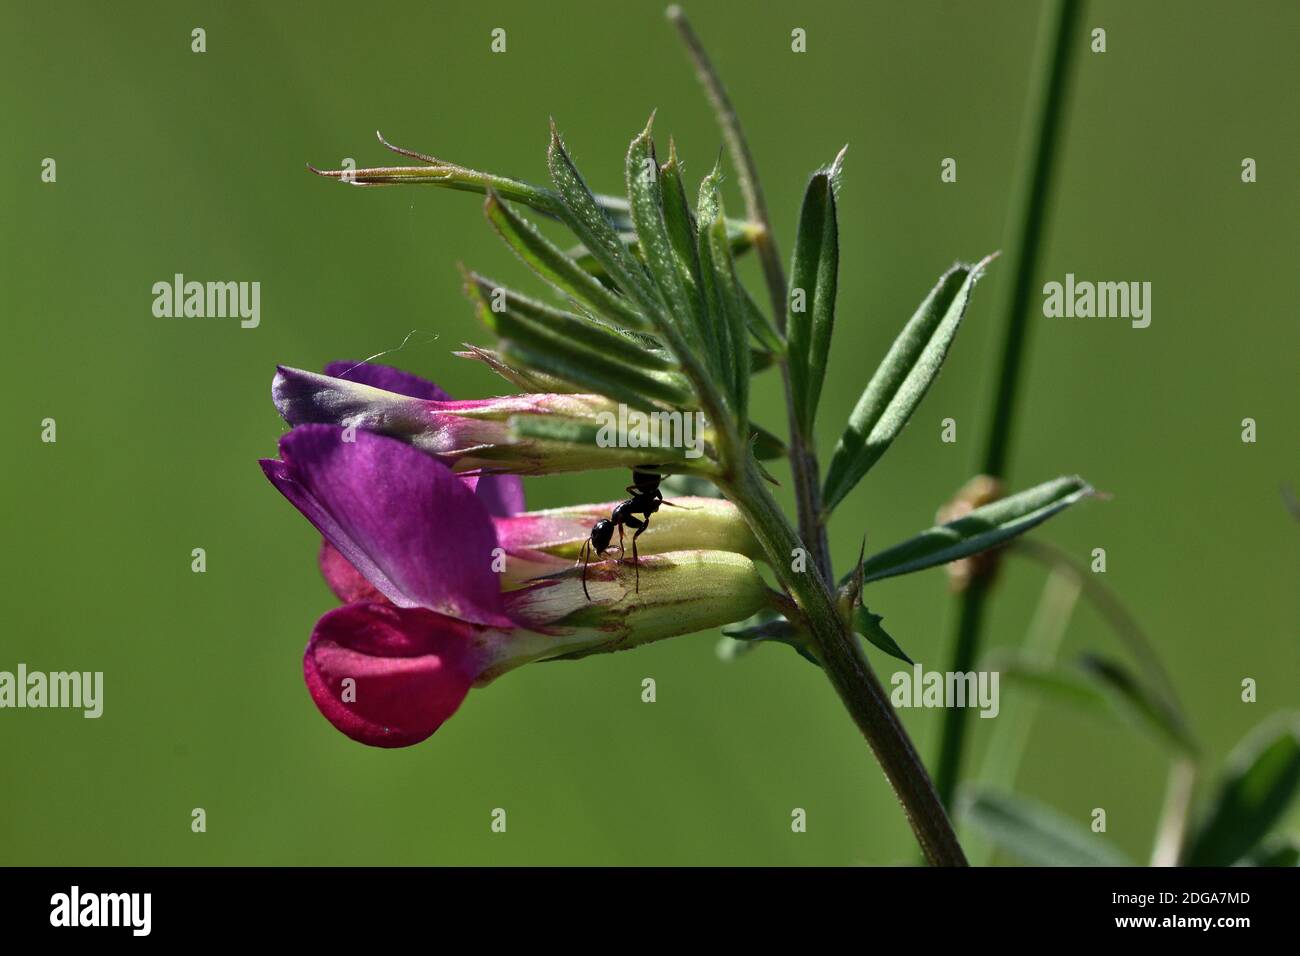 Isolierte violette Blume von Vicia sativa, auch genannt gewöhnlicher Vetch, Gartenvetch, Tare oder einfach Vetch, mit einer Ameise auf der Oberseite. Stockfoto